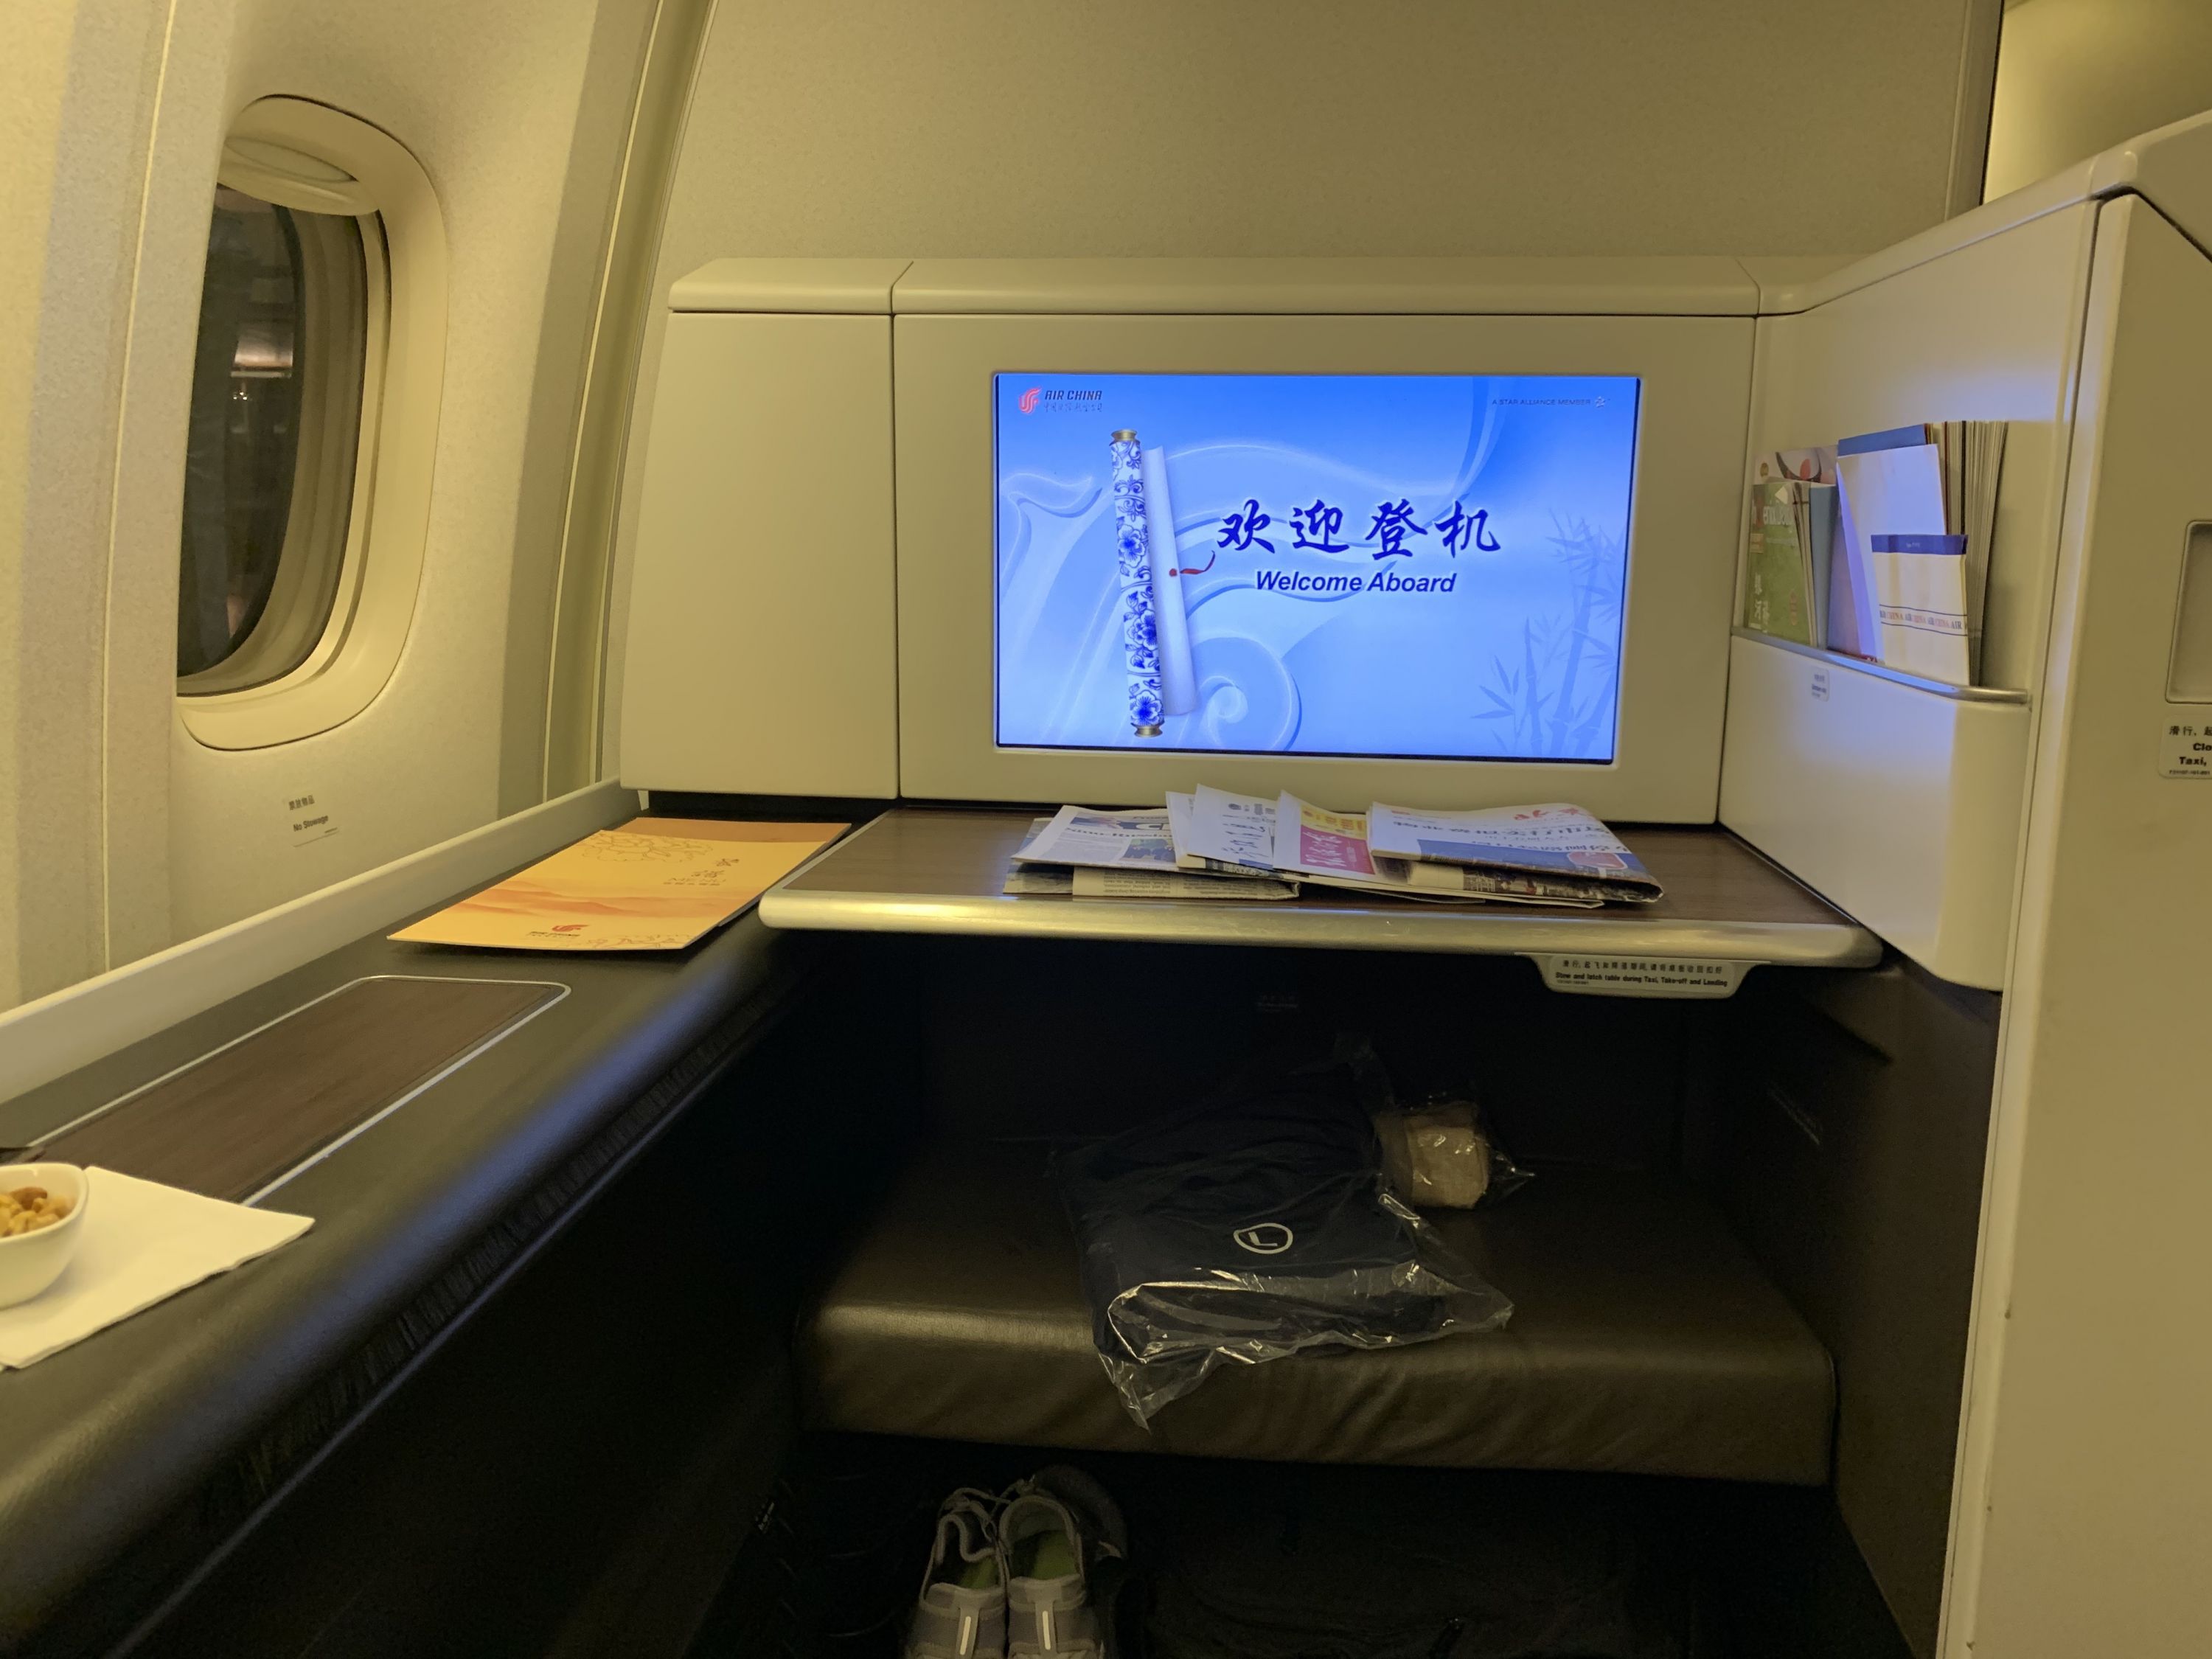 波音737-800驾驶舱面板详解 - 哔哩哔哩